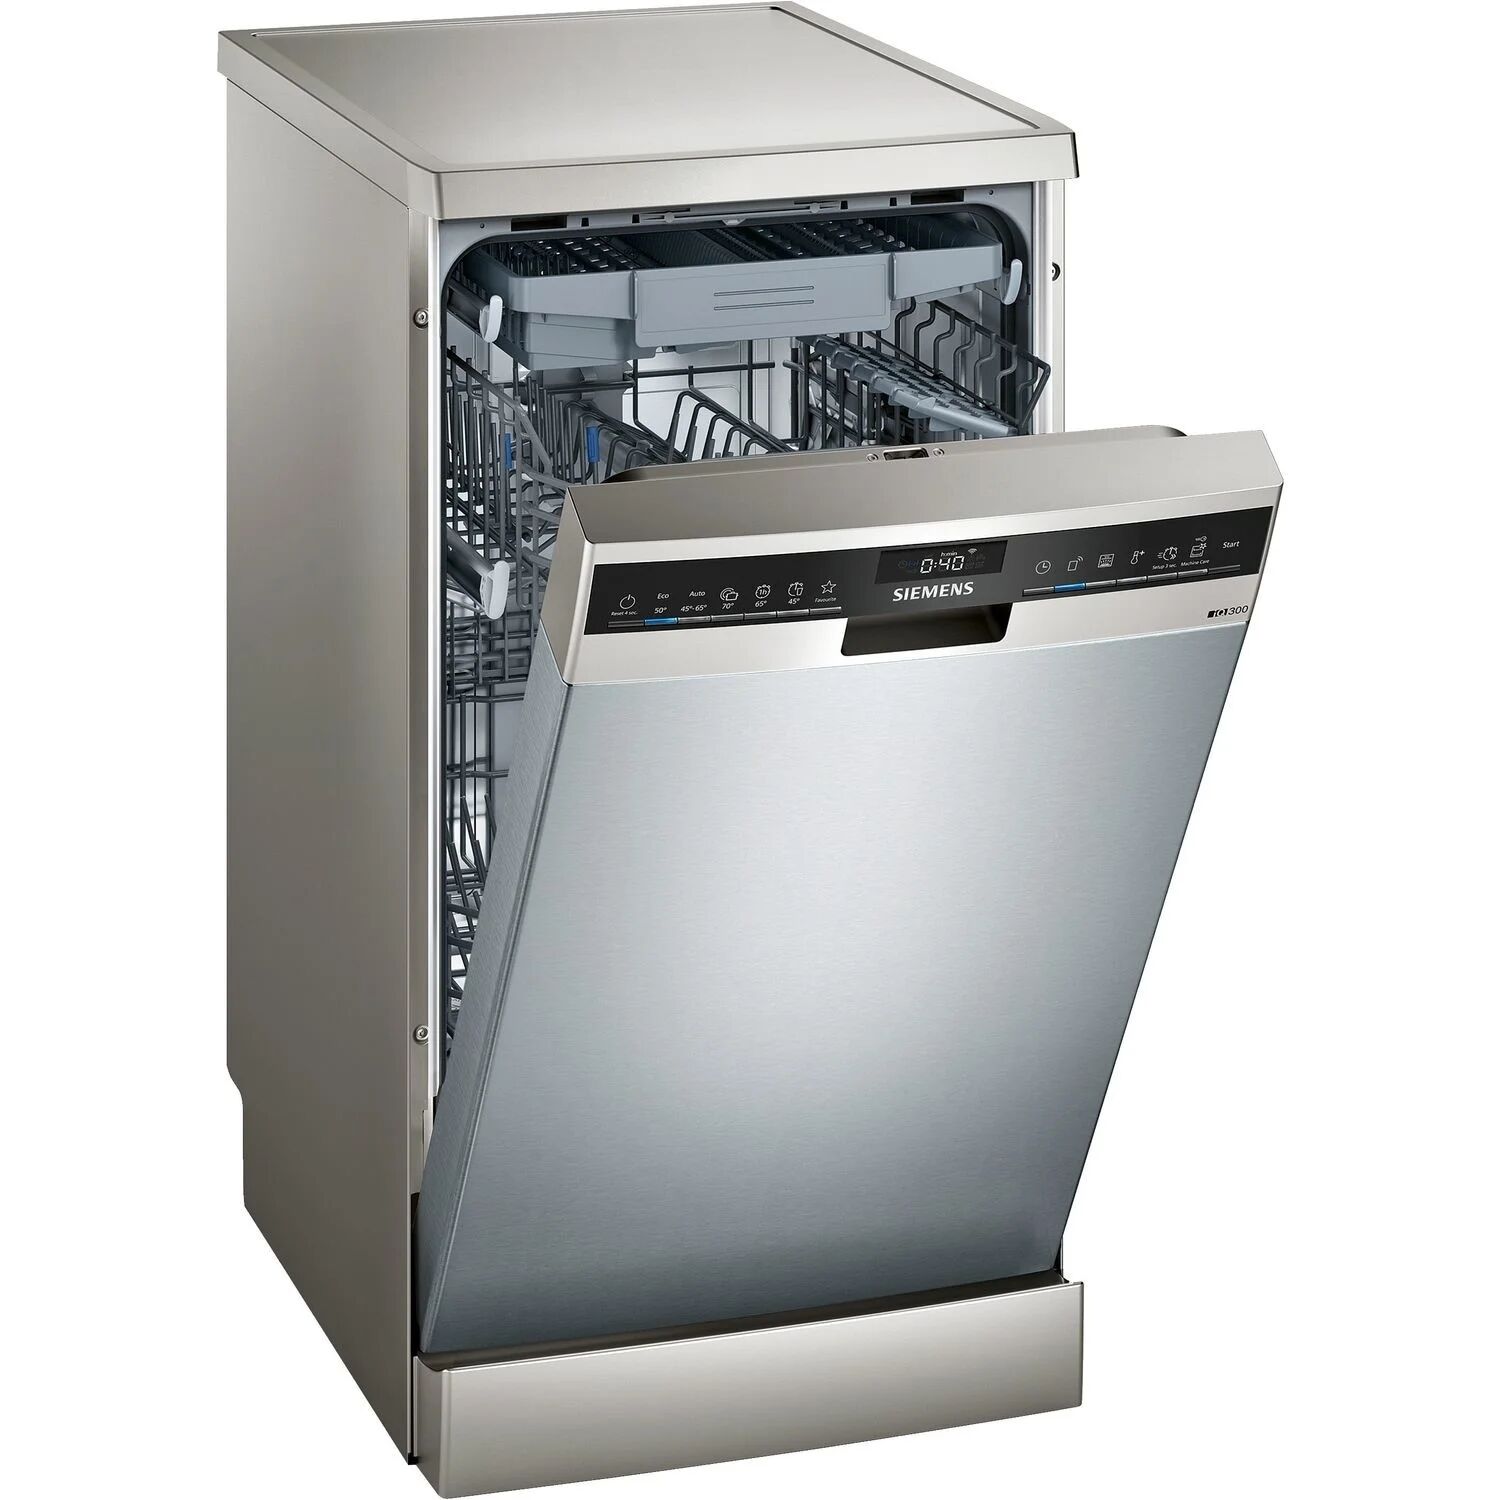 Siemens Slimline Freestanding Dishwasher - Stainless Steel